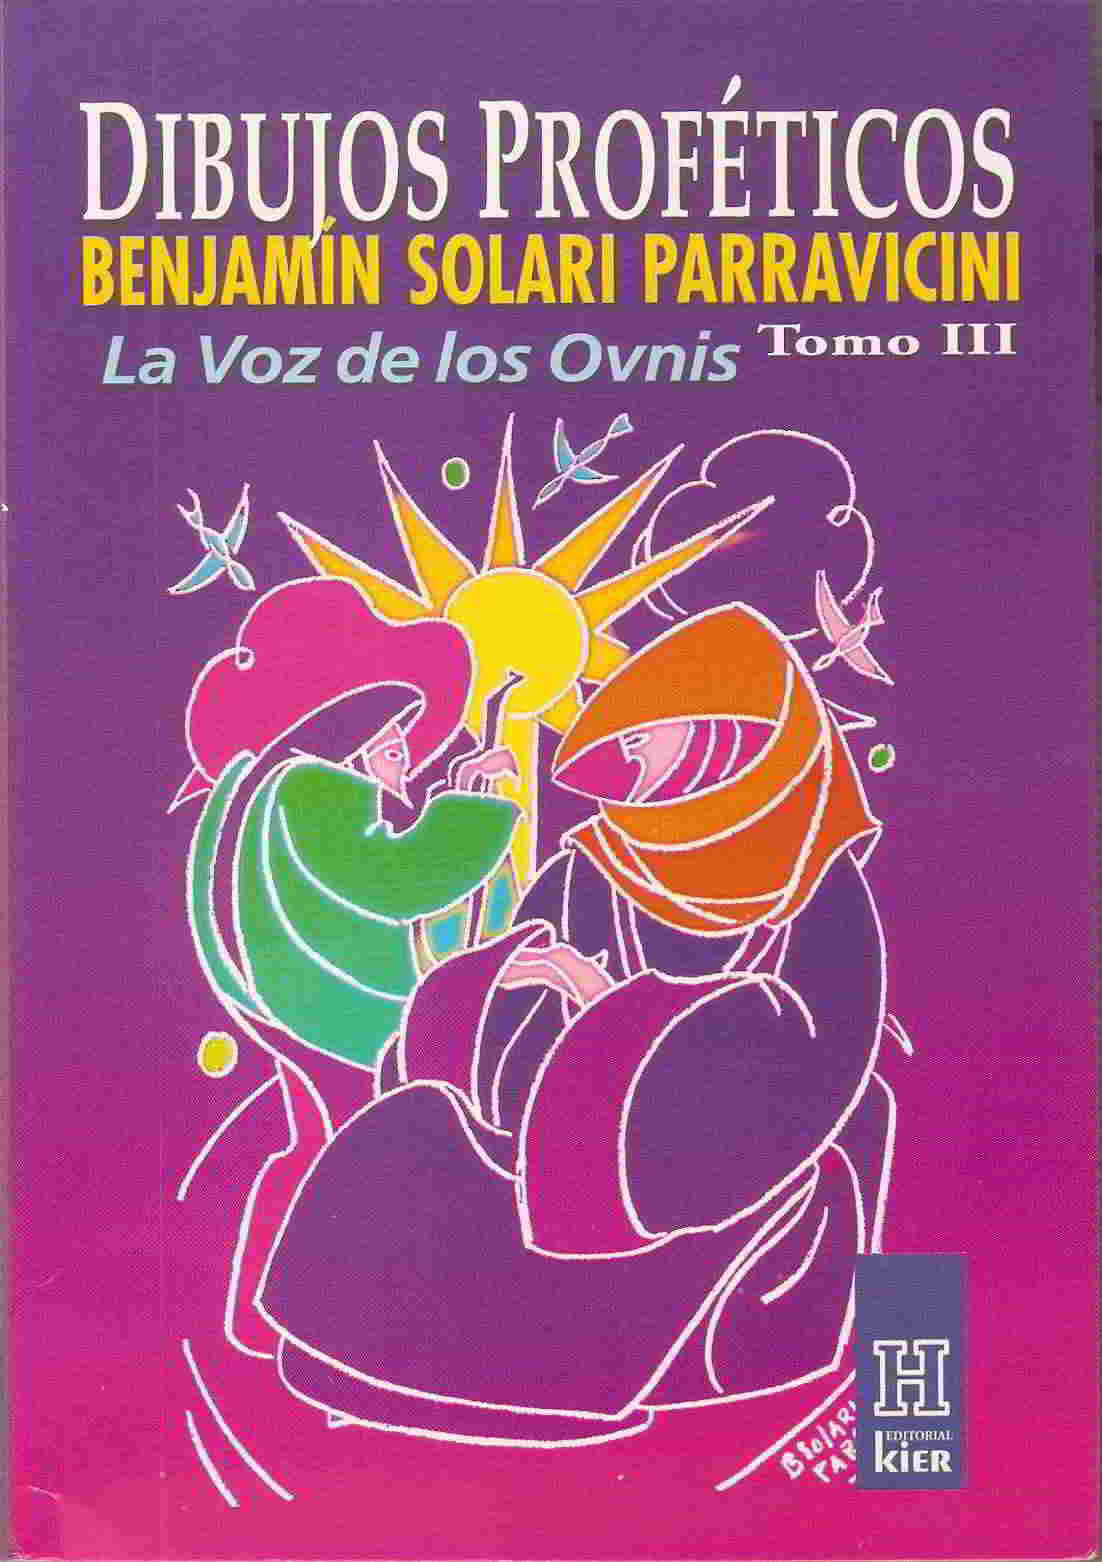 Benjamin Solari Parravicini, una vida guiada desde el cosmos